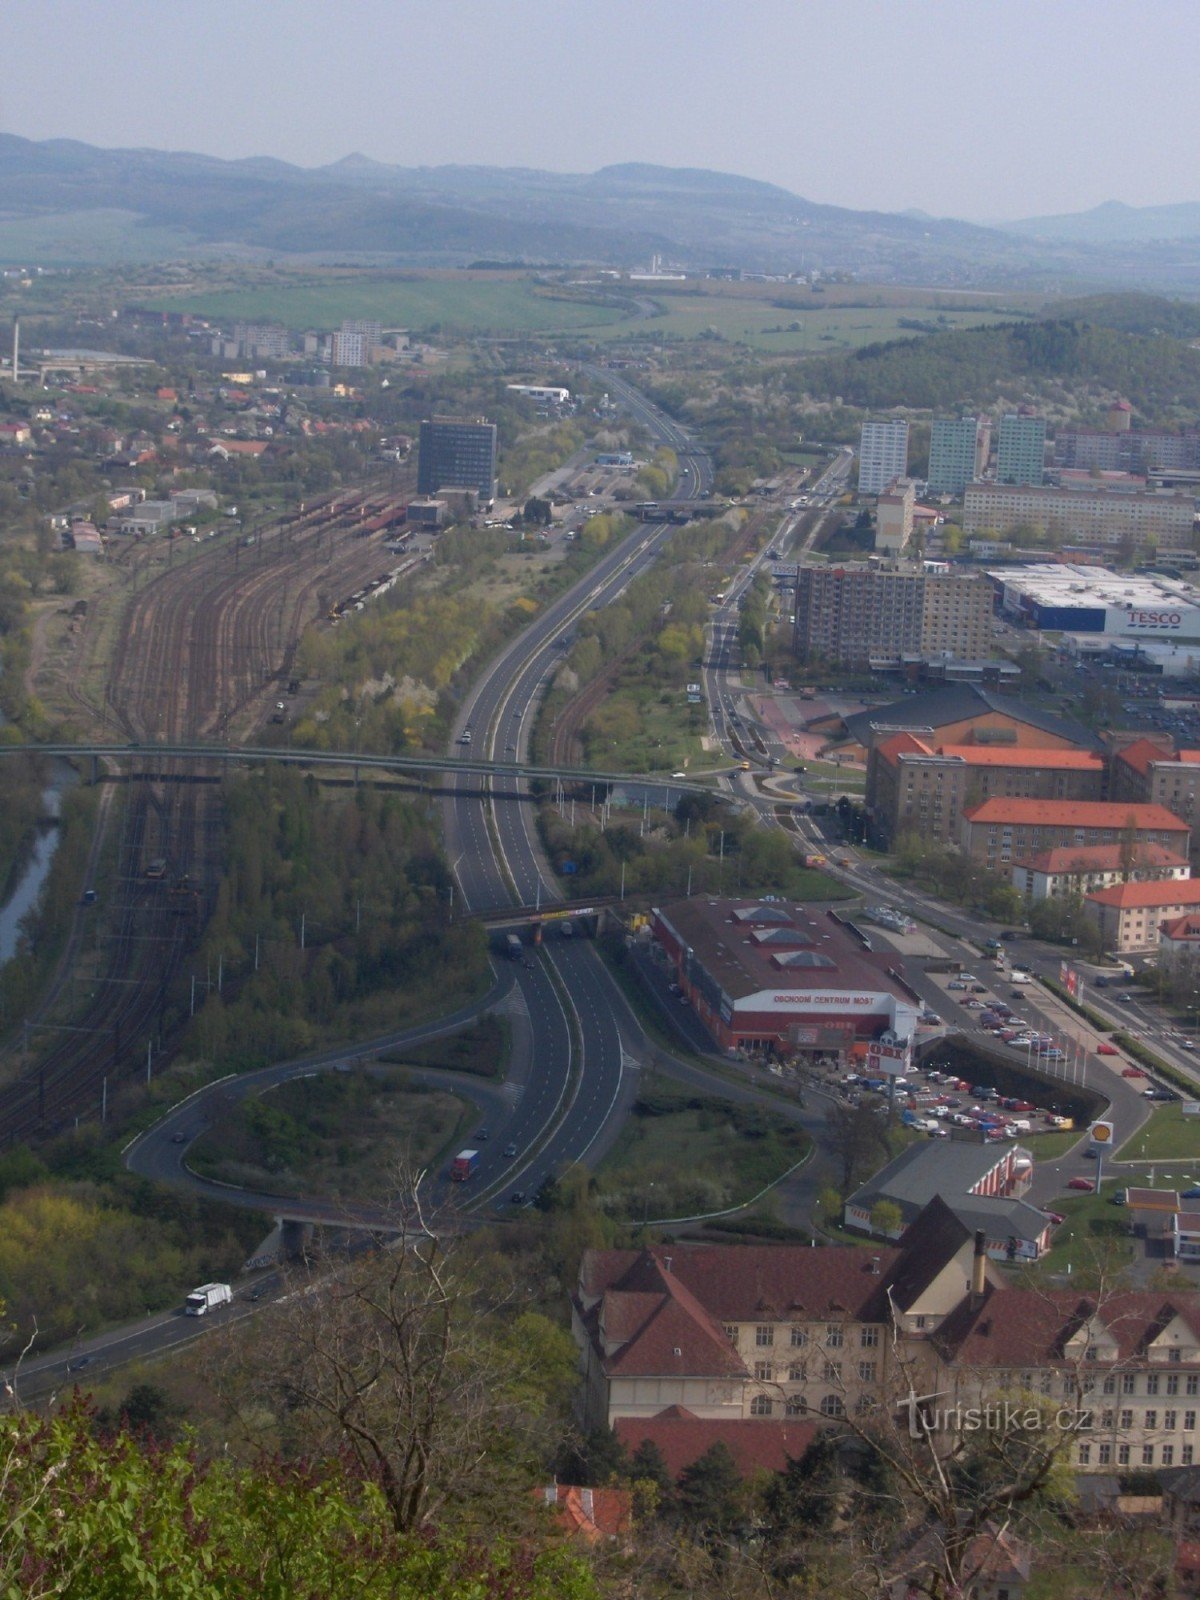 θέα από το Hněvín προς το σιδηροδρομικό σταθμό